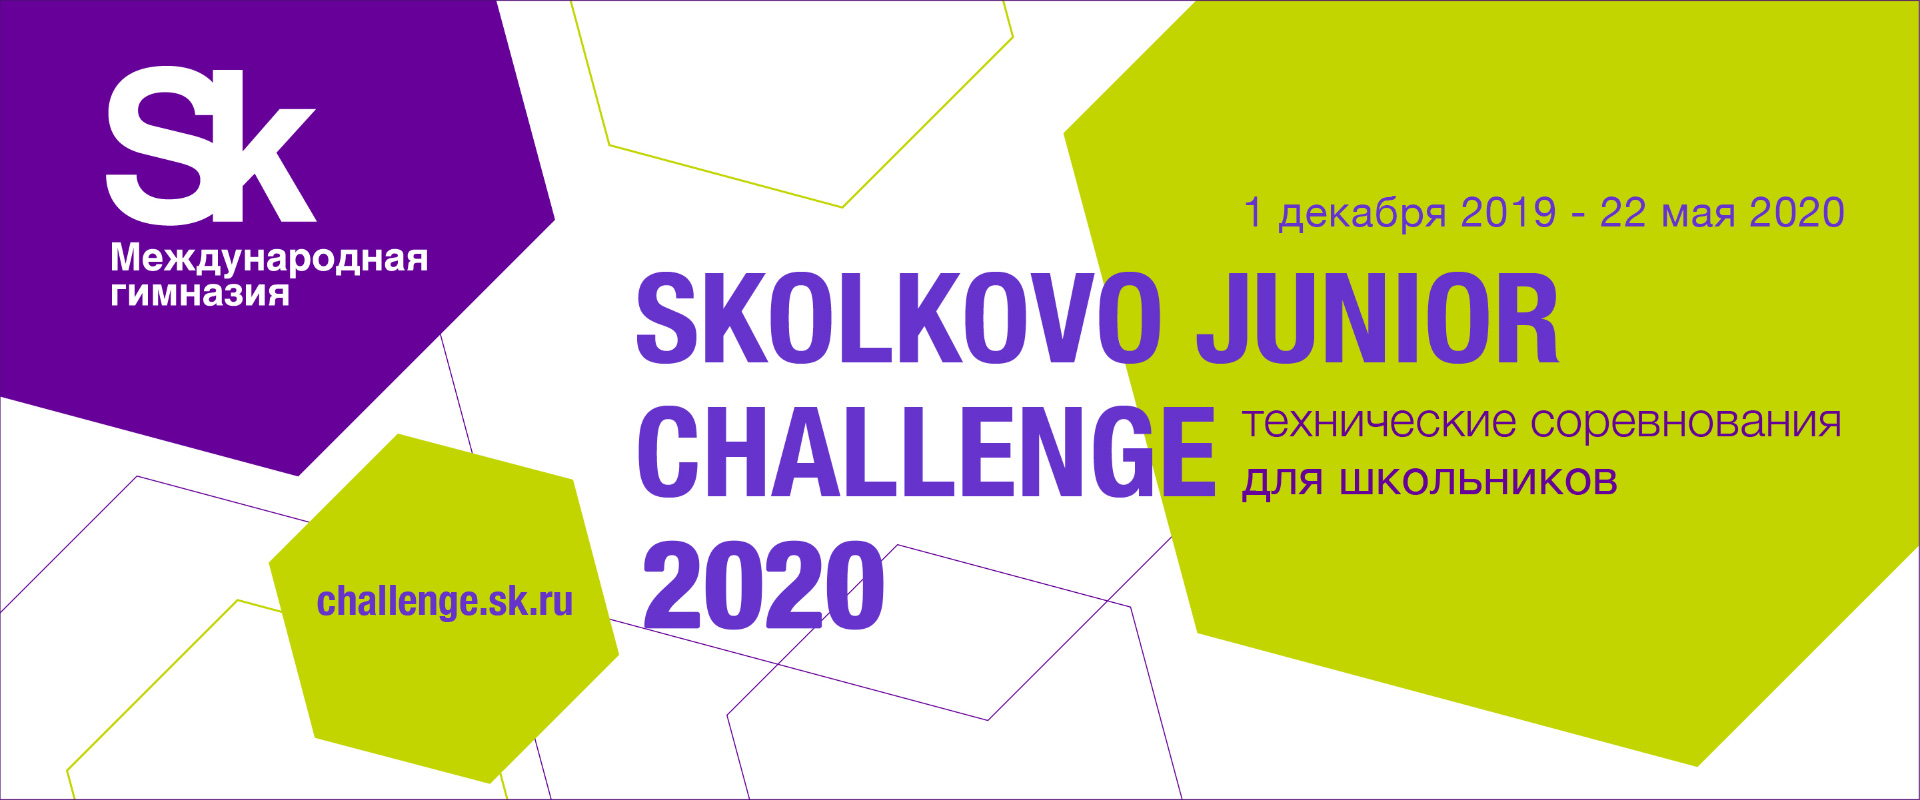 До окончания регистрации на Skolkovo Junior Challenge осталось 10 дней!